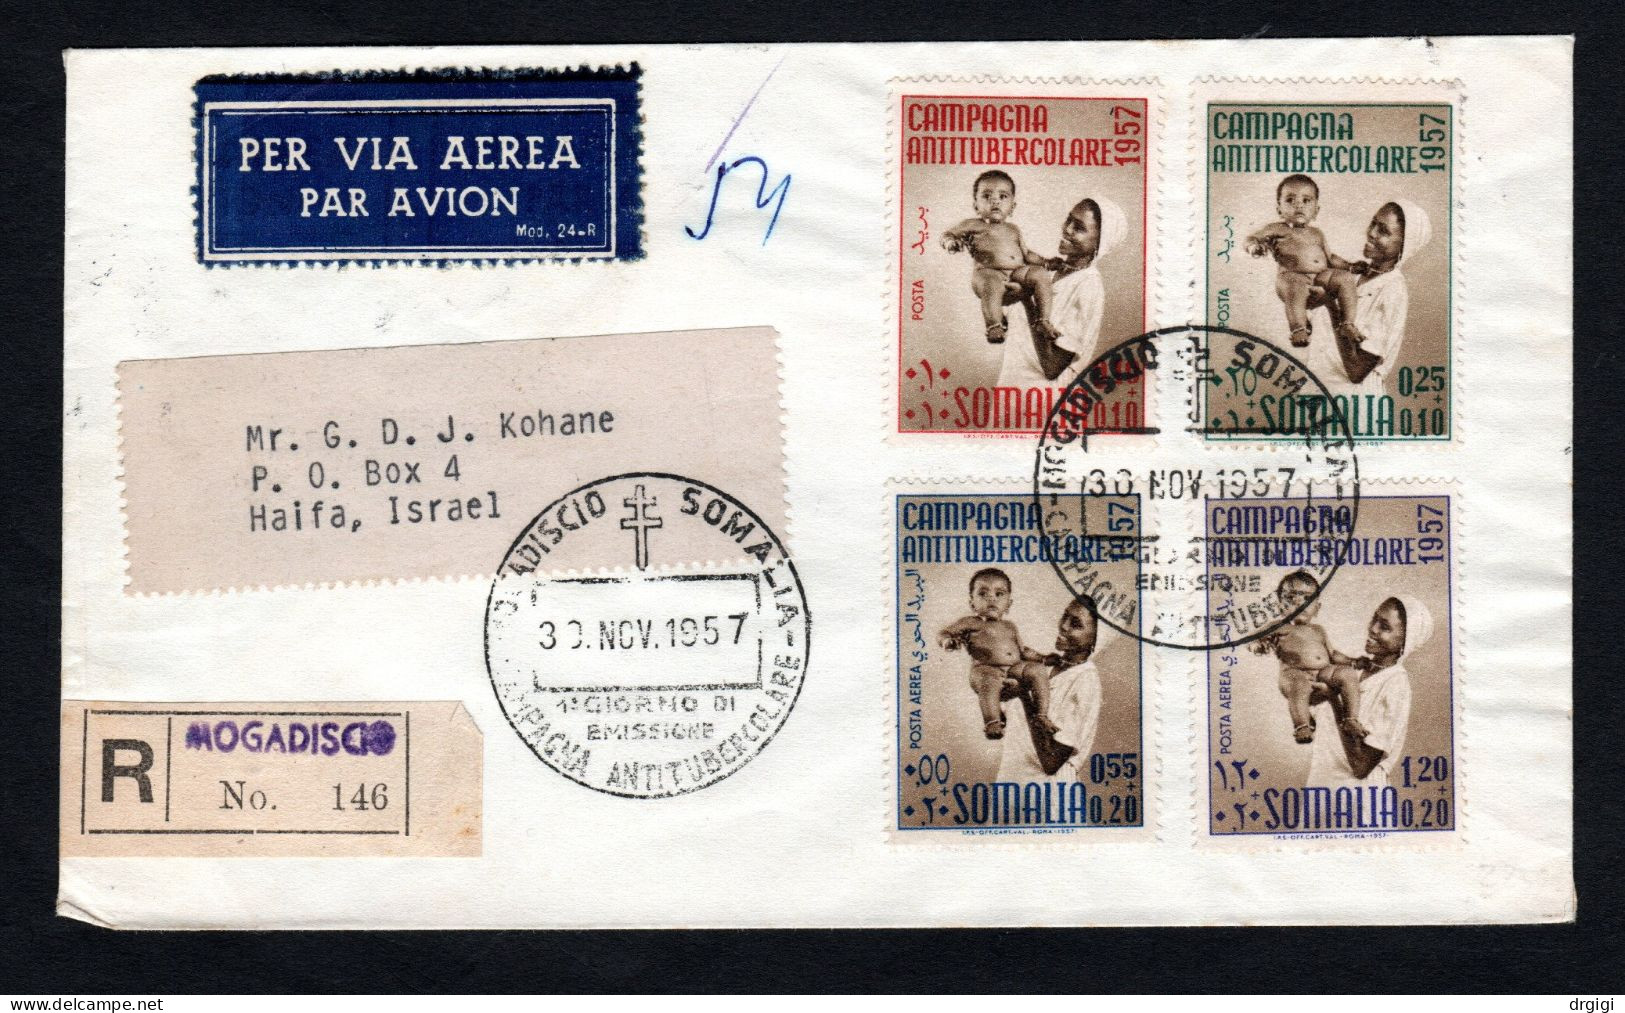 Somalia AFIS 1957, FDC, 2a CAMPAGNA ANTITUBERCOLARE - Somalia (AFIS)